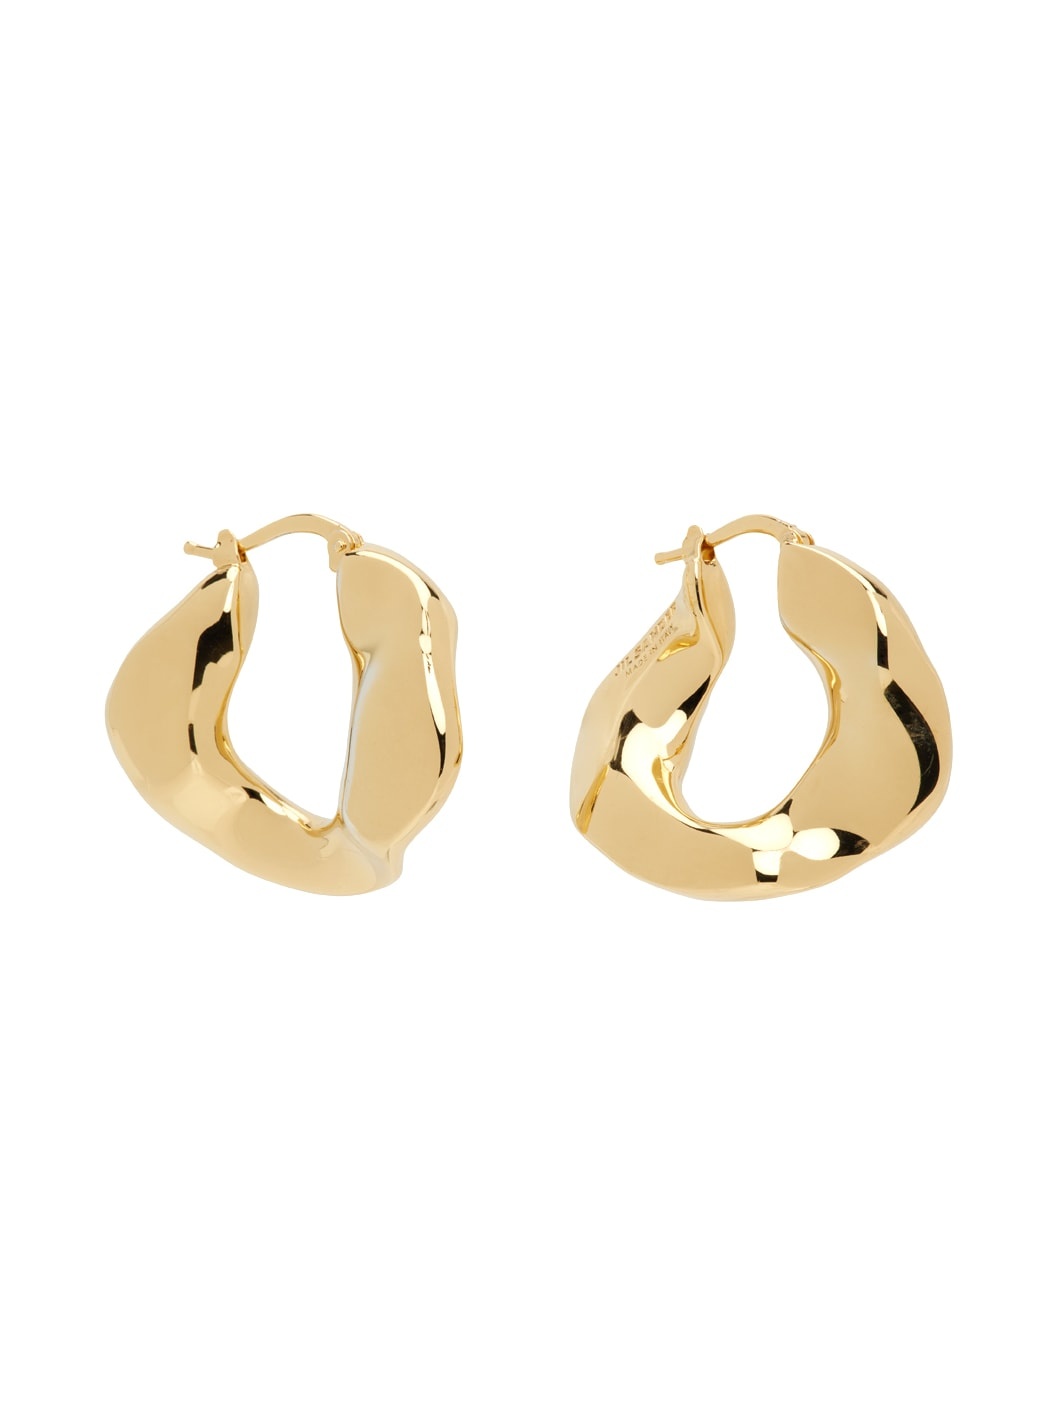 Gold Hoop Earrings - 2